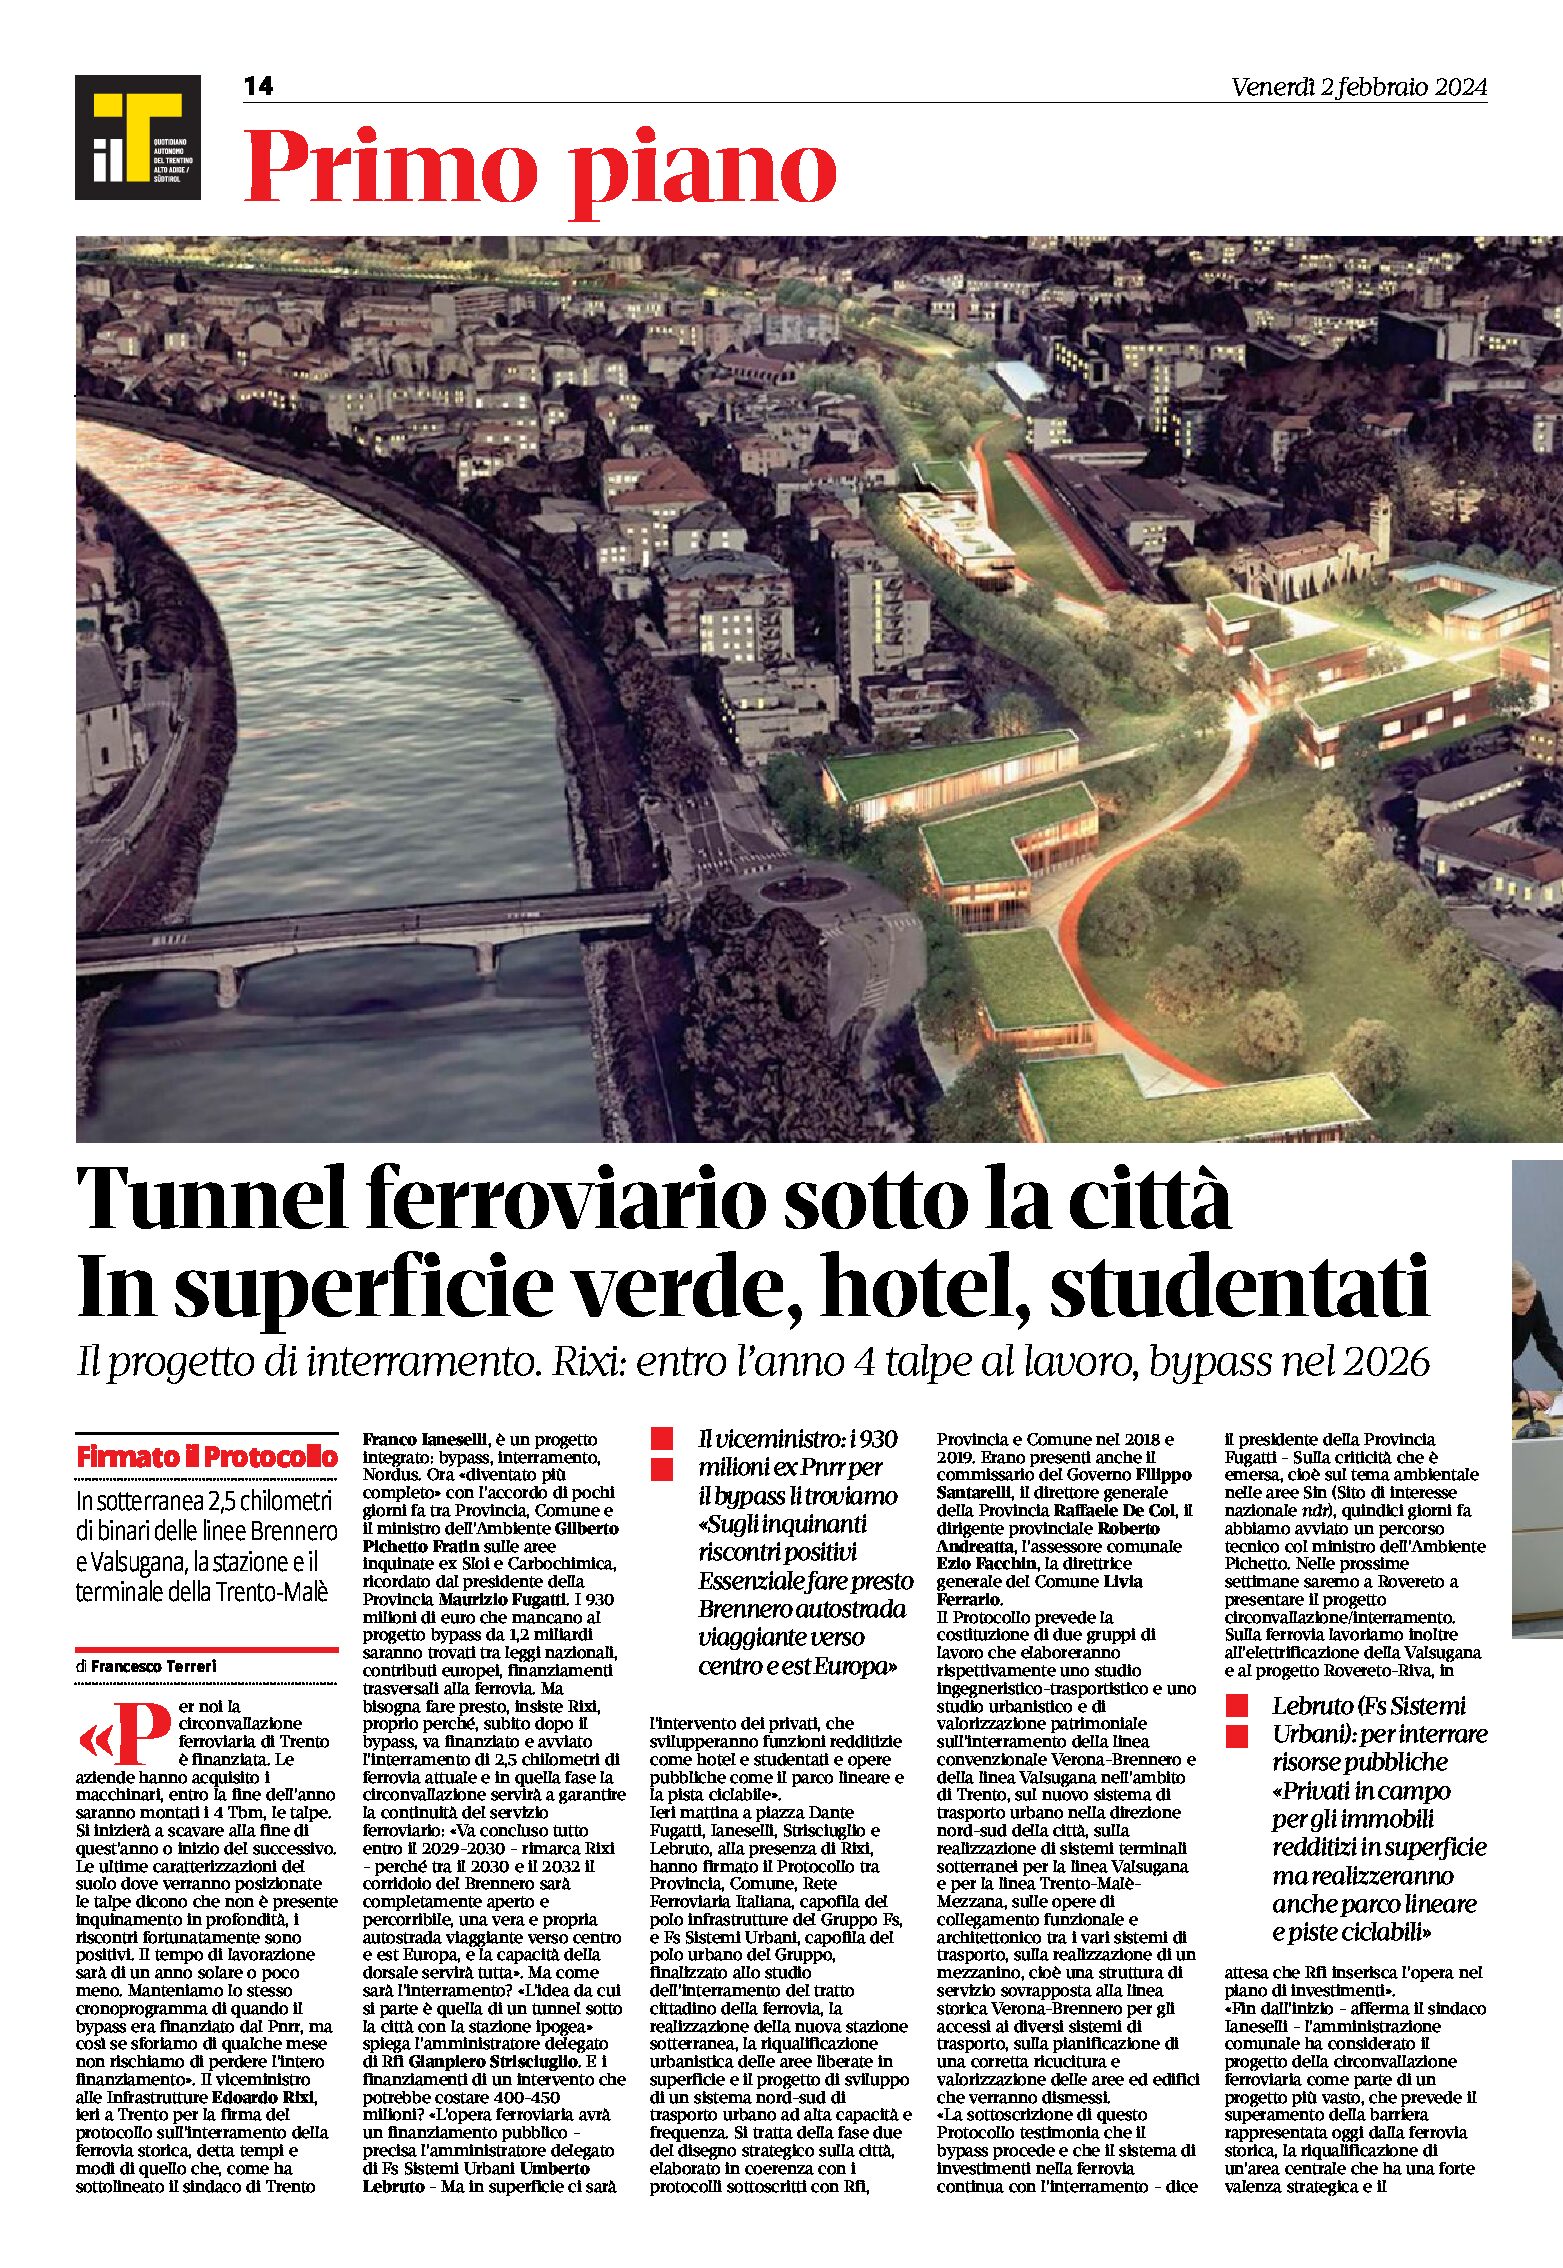 Trento: tunnel ferroviario sotto la città. In superficie verde, hotel, studentati